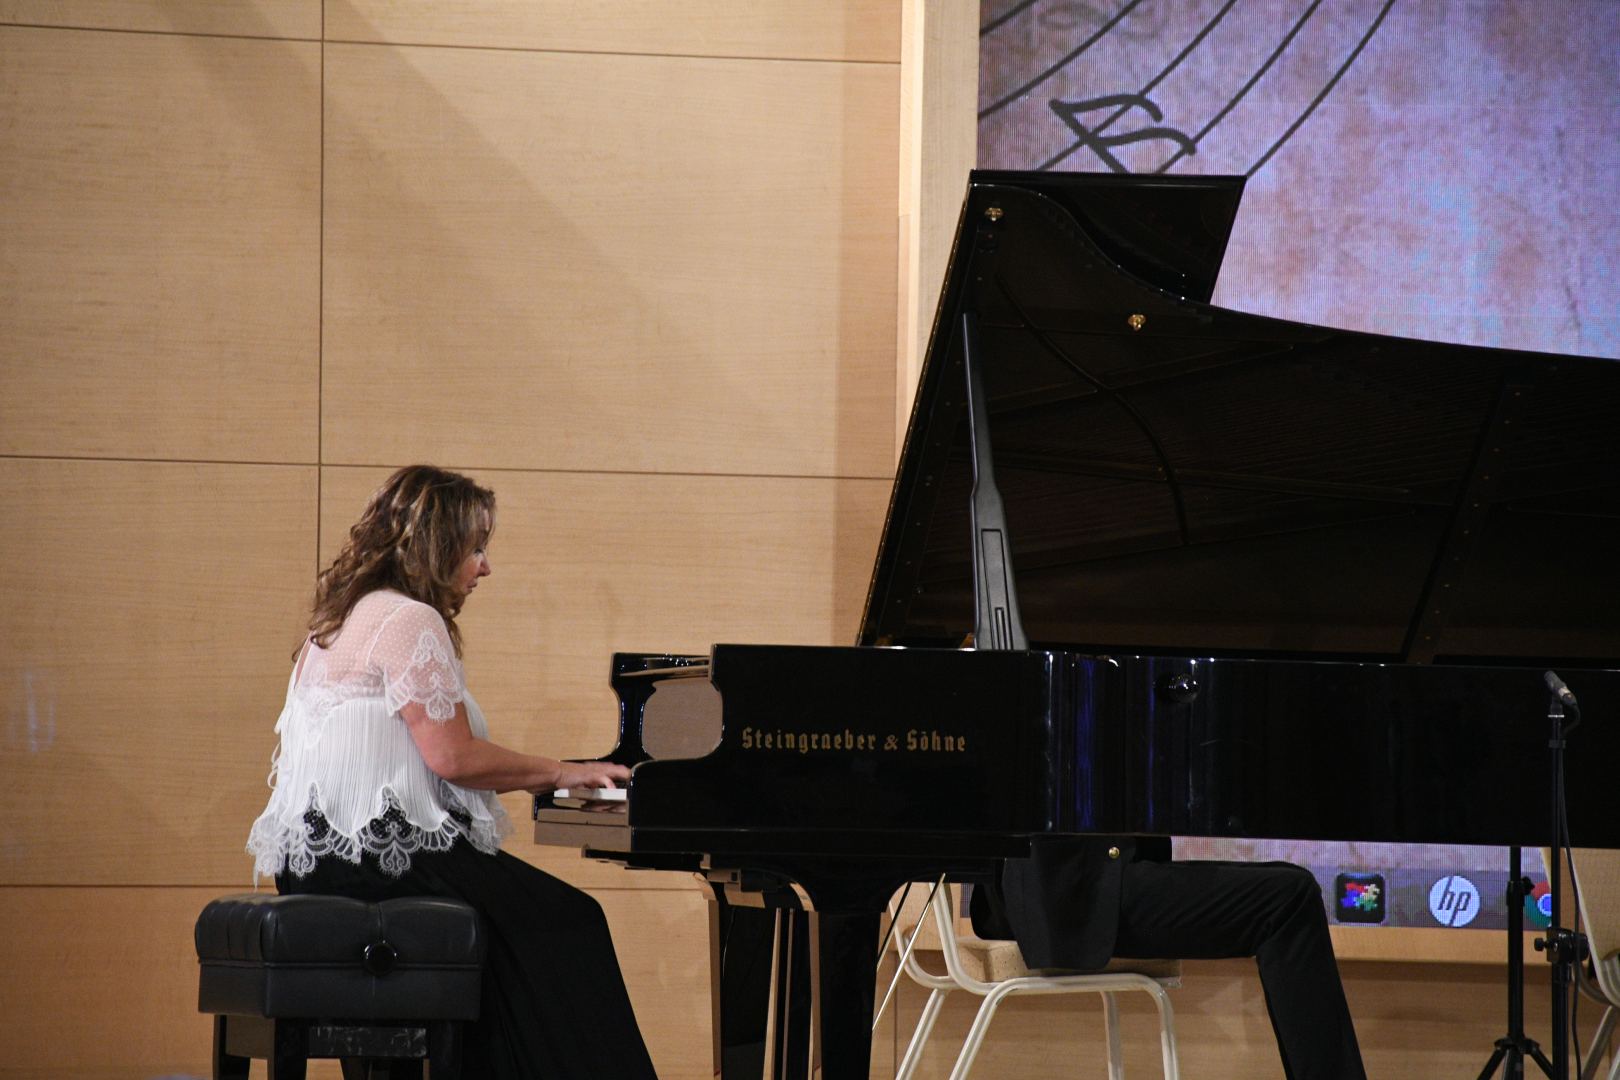 Выдающиеся пианисты на сцене Габалинского фестиваля (ФОТО/ВИДЕО)